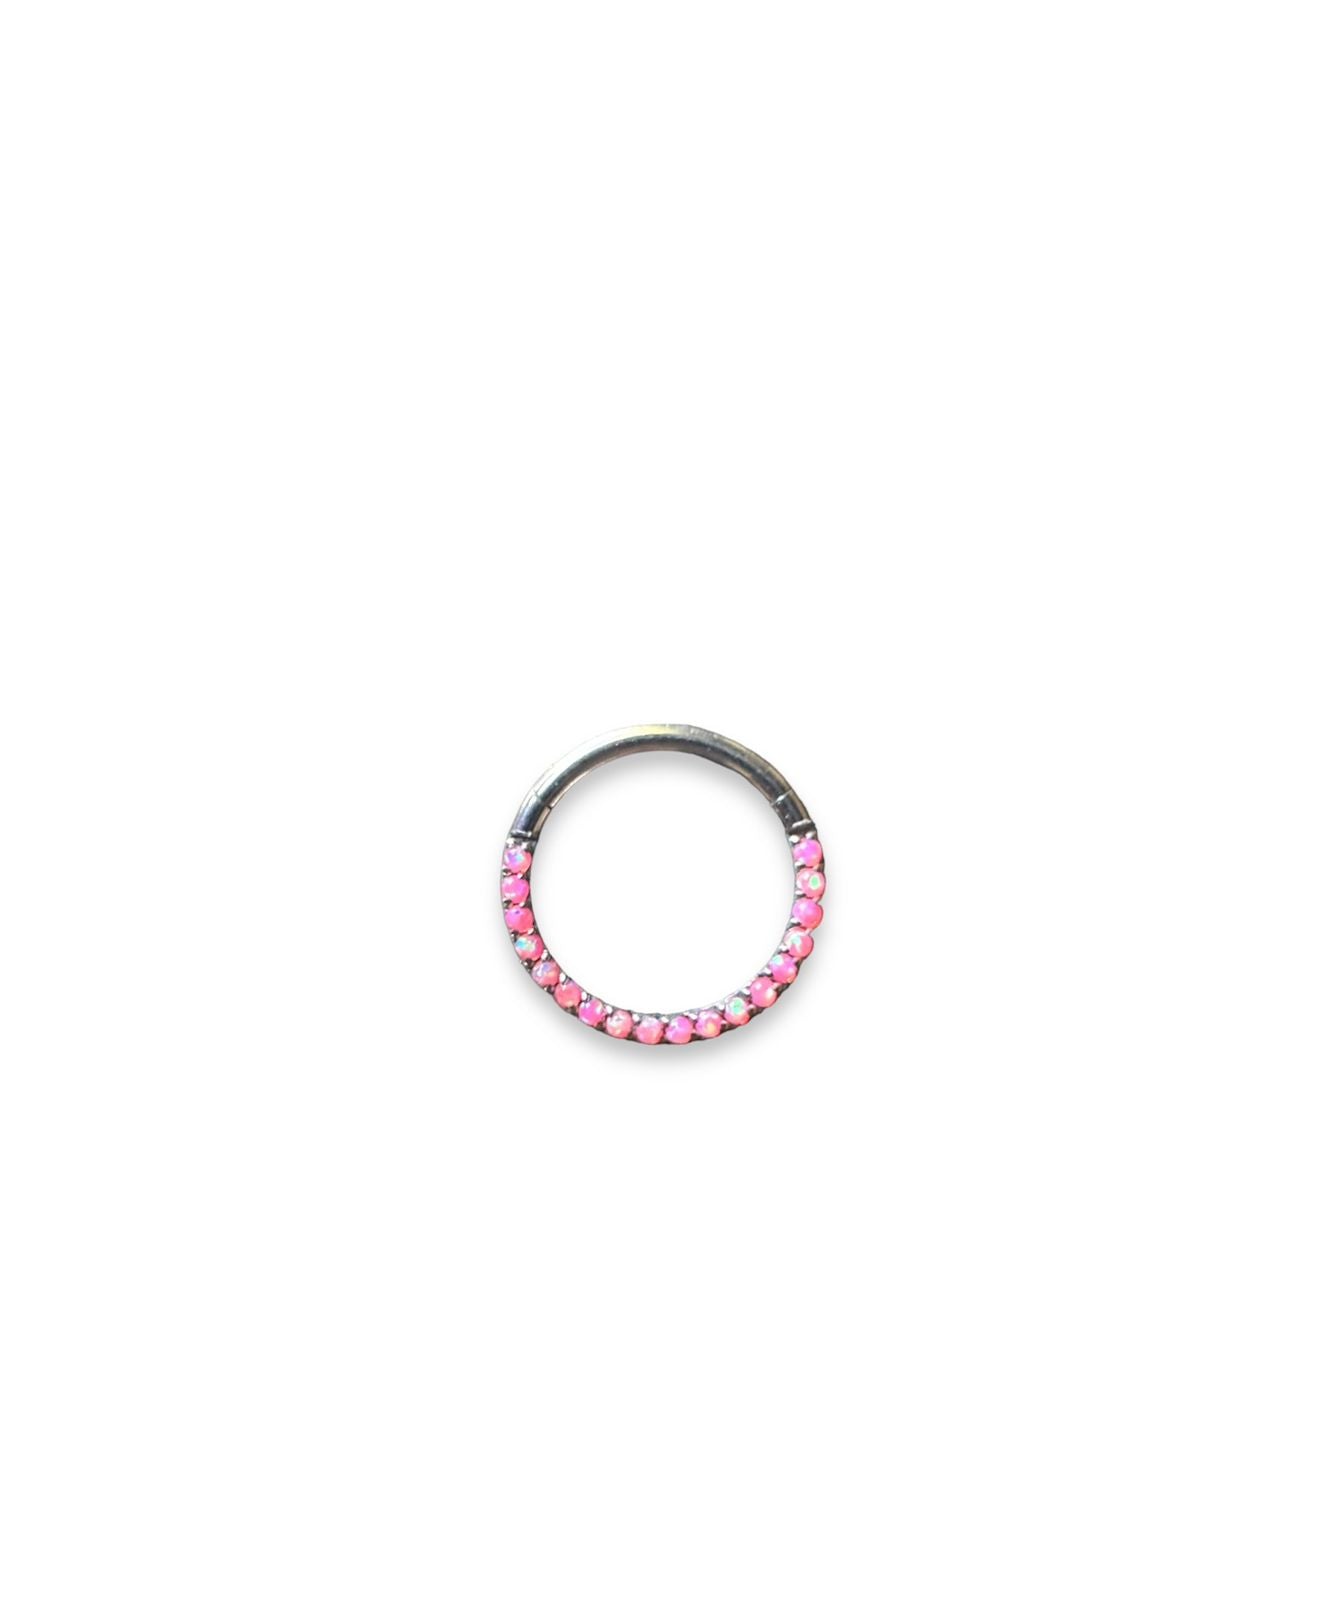 Argolla titanio ASTM F136 - Segment ring con línea de ópalos frontal pink